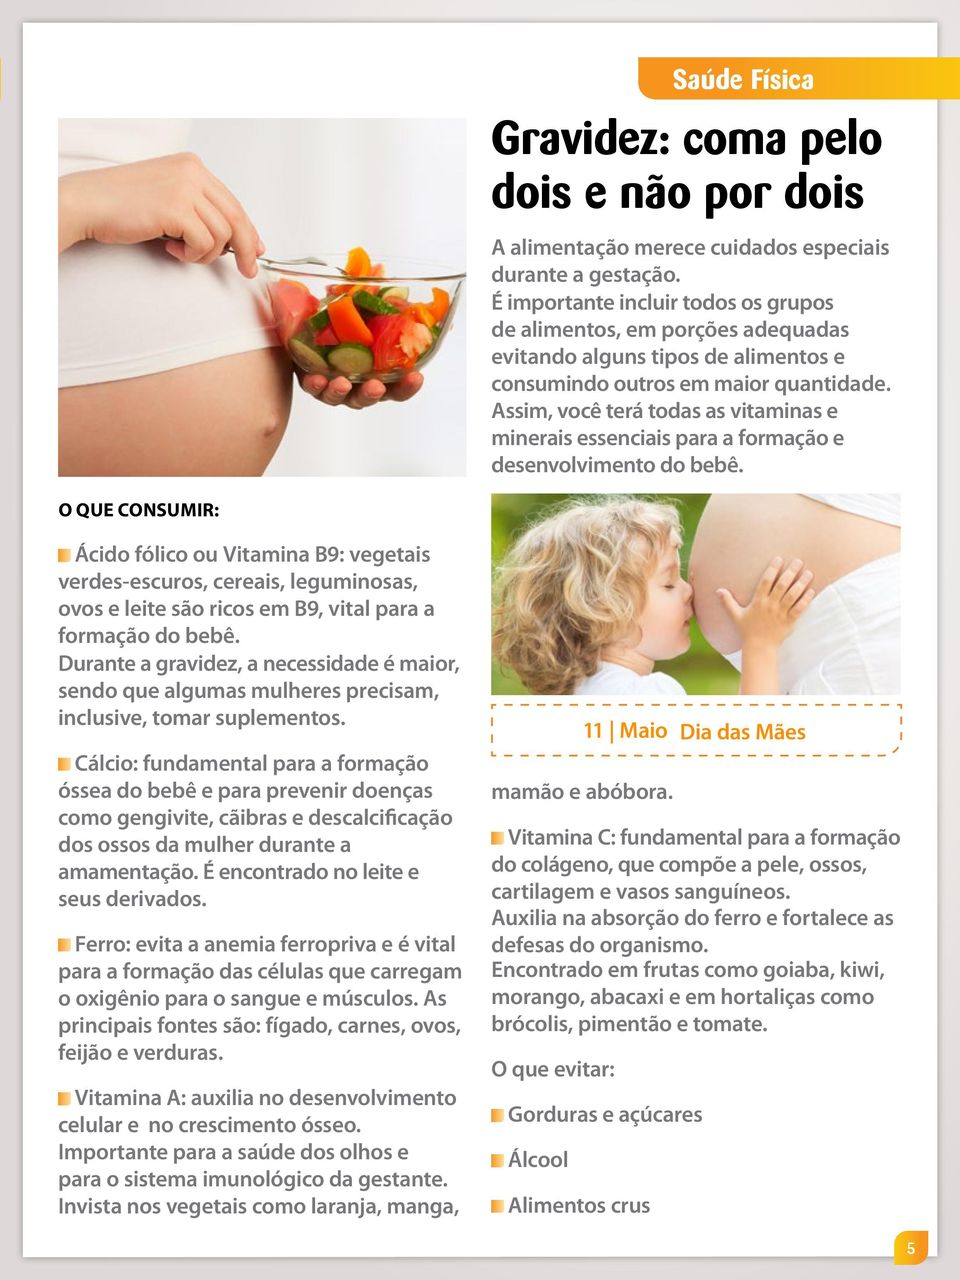 Assim, você terá todas as vitaminas e minerais essenciais para a formação e desenvolvimento do bebê.